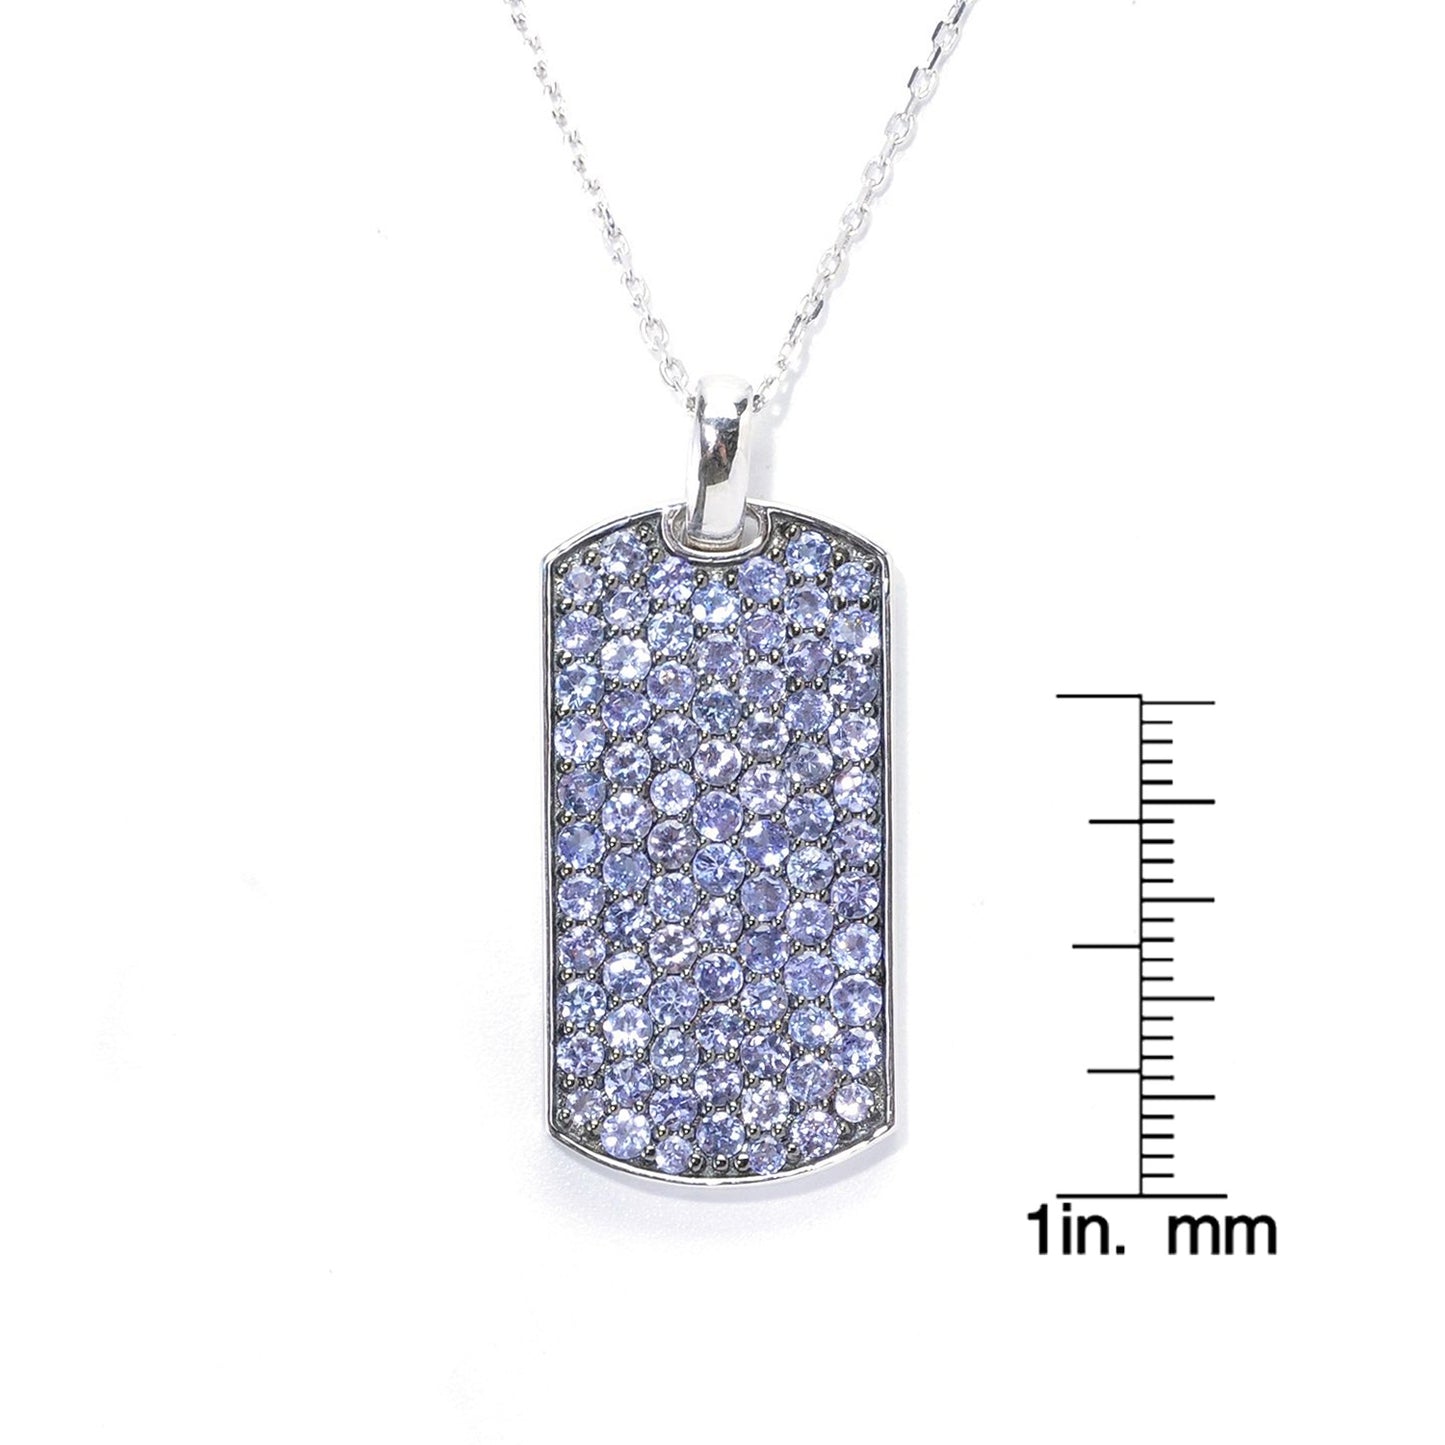 Sterling Silver Tanzanite Pendant Pendant 1.68"L With 18" Chain - Pinctore